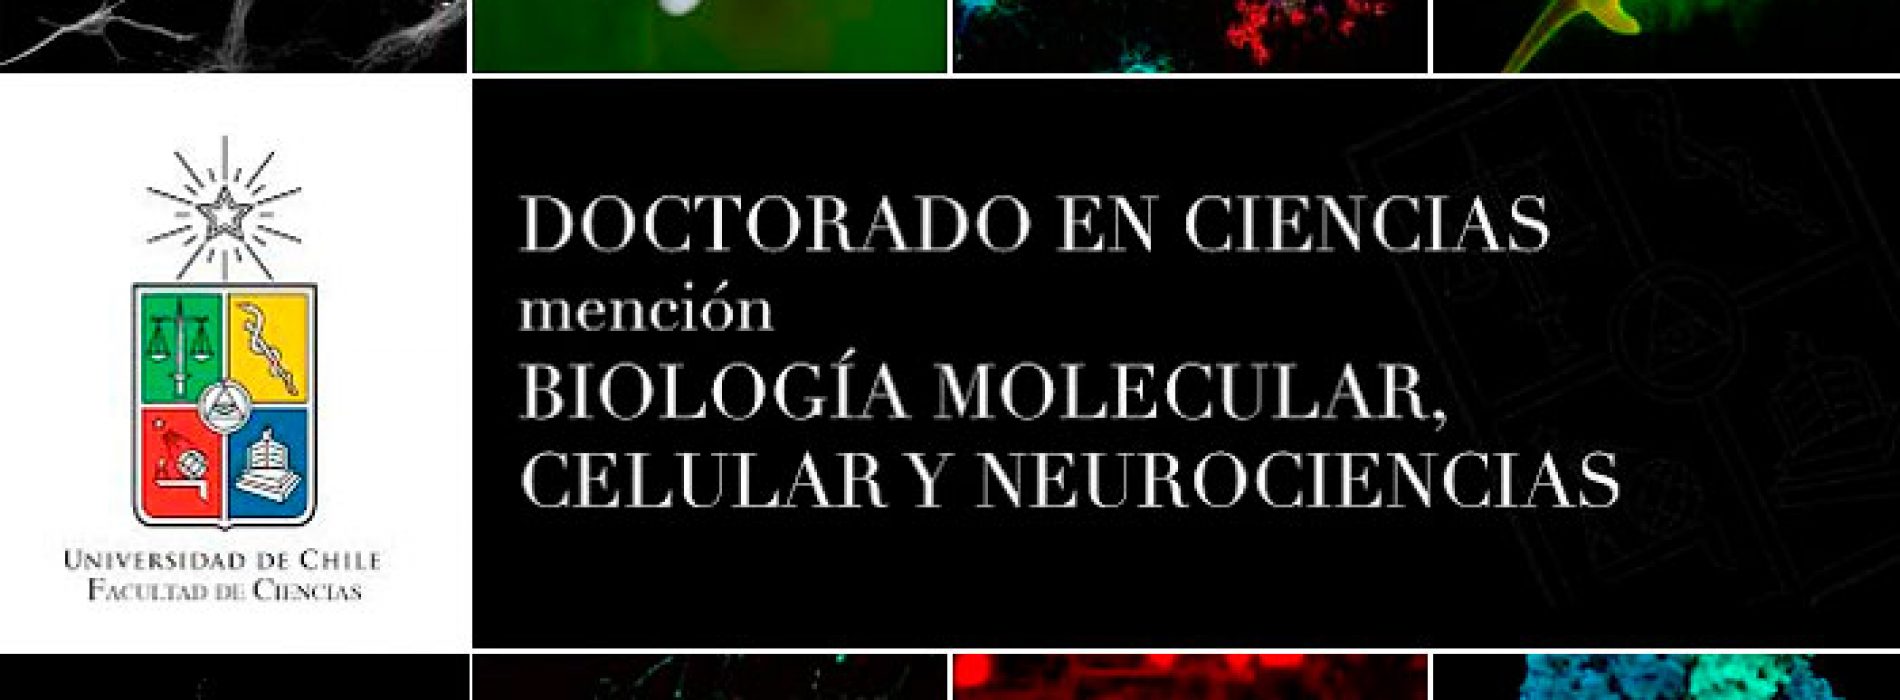 Doctorado en Ciencias mención Biología Molecular, Celular y Neurociencias